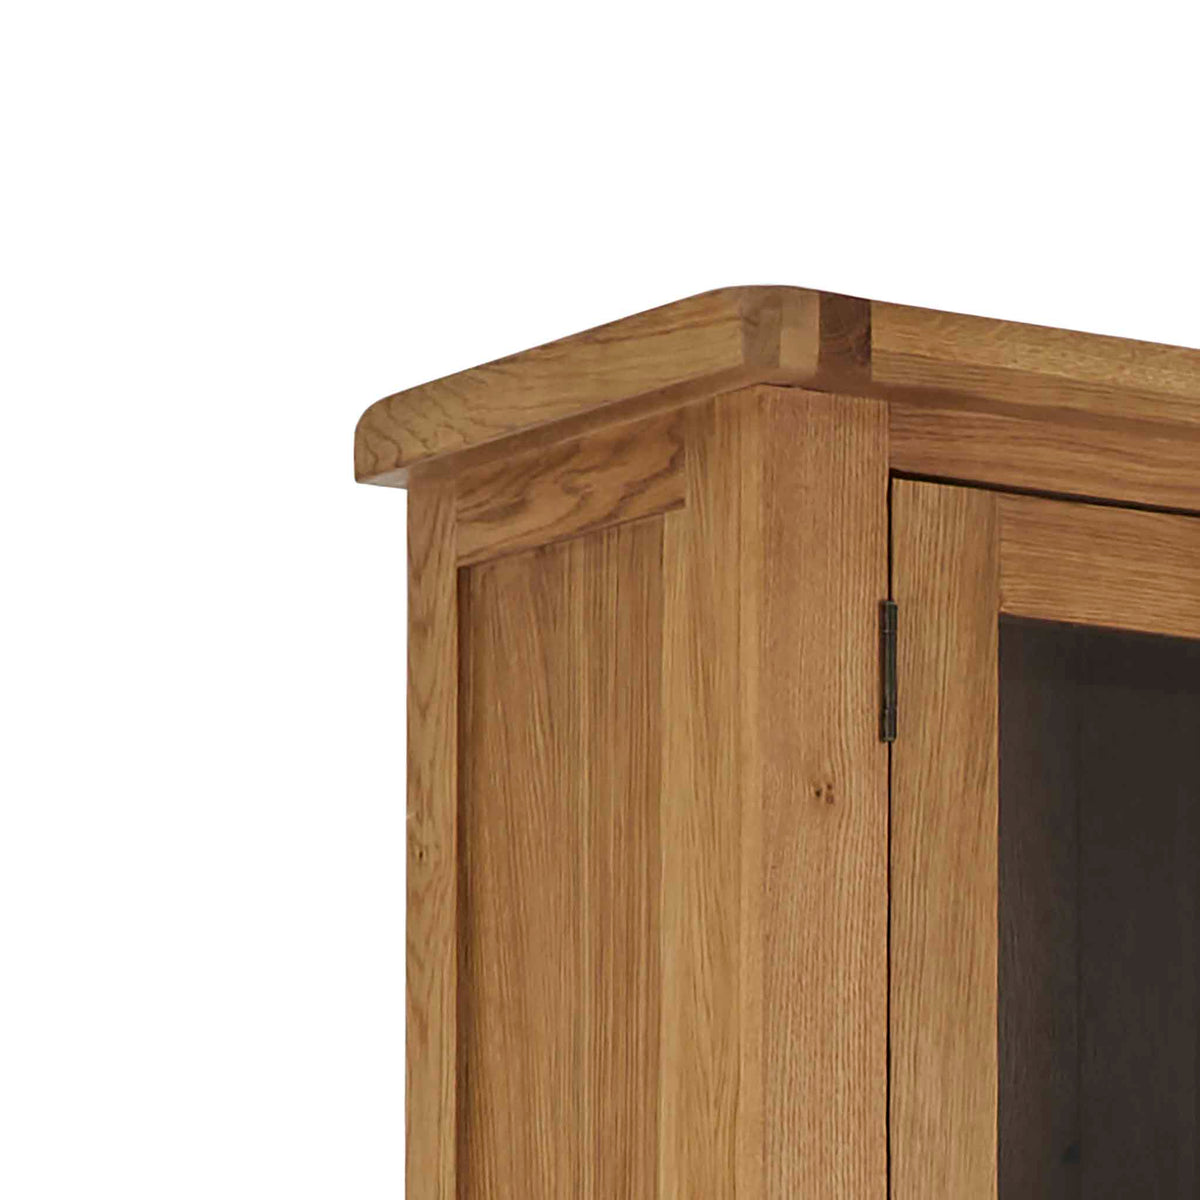 Zelah Oak Display Cabinet - Close up of top corner